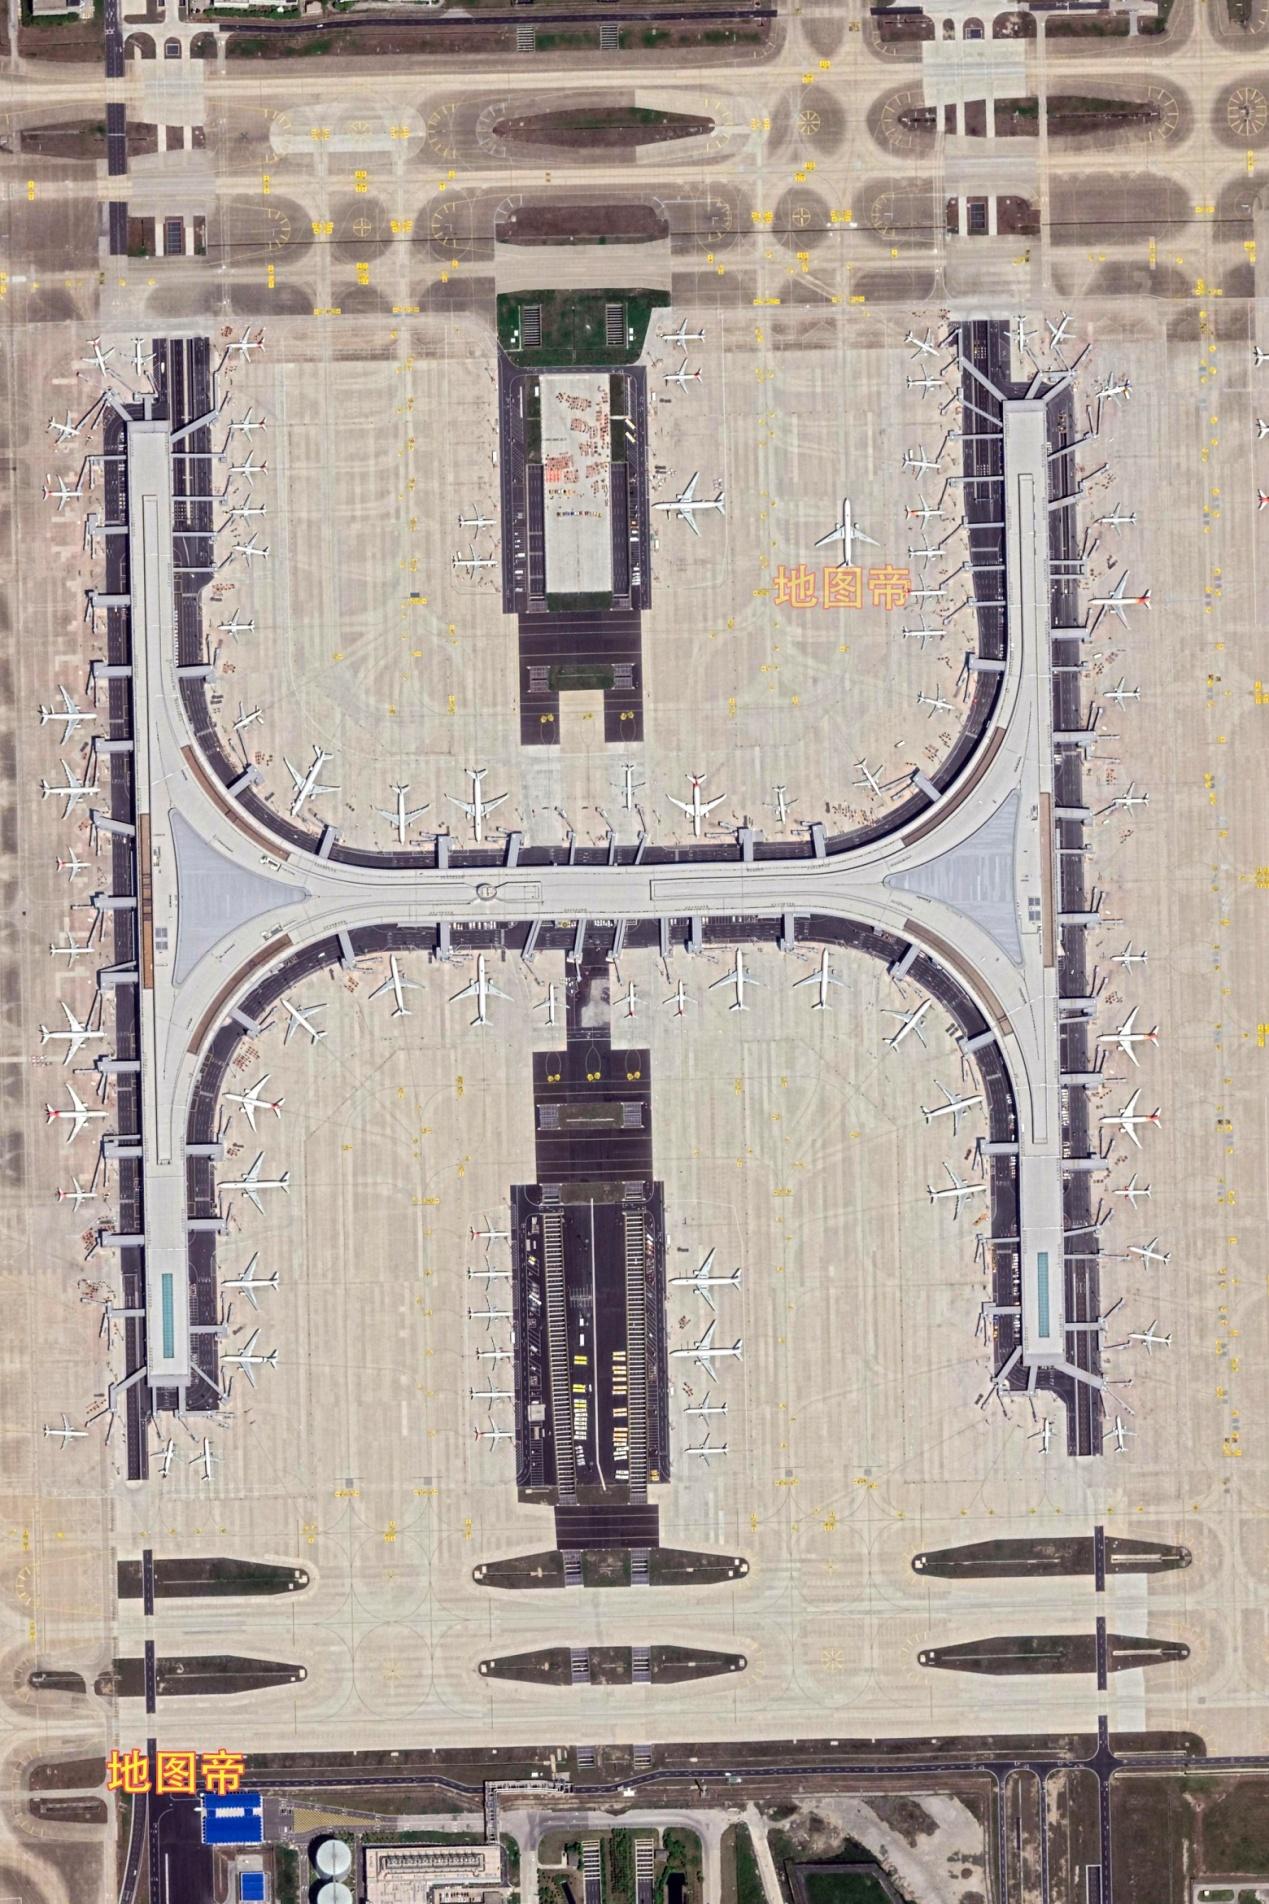 上海浦东国际机场拥有全球最大单体卫星厅,面积约60万平方米,世界第一